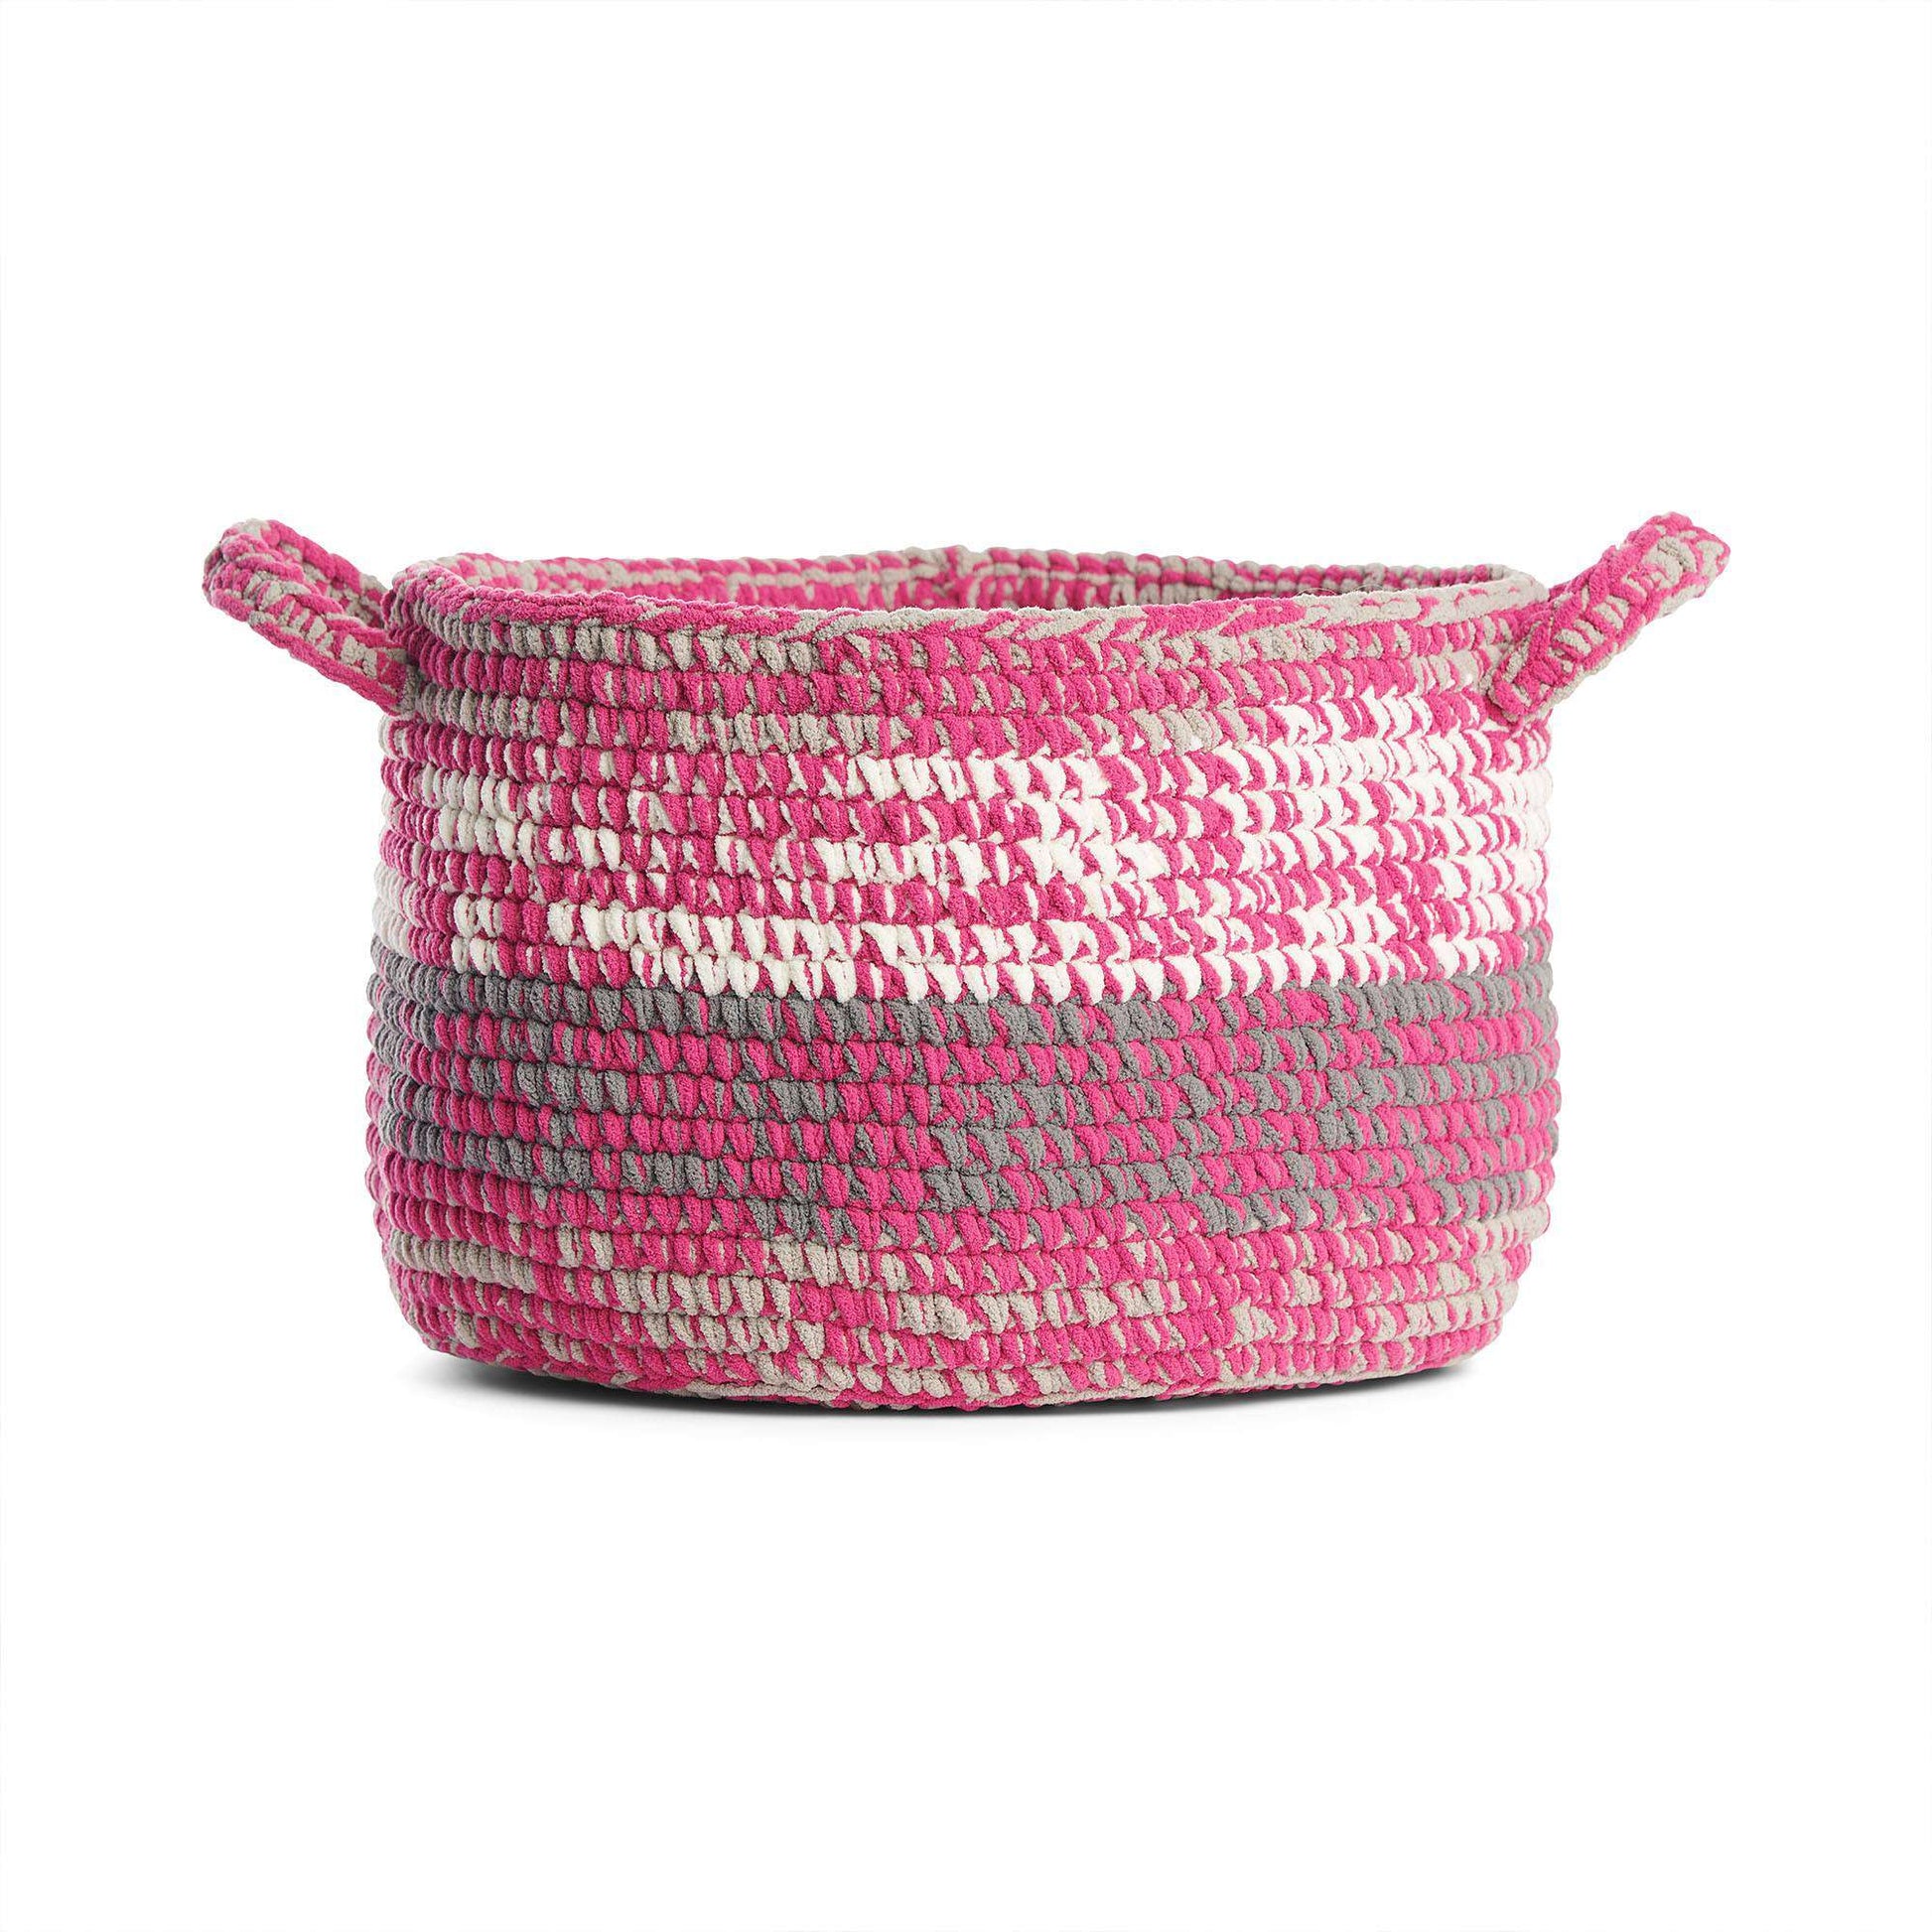 Bernat Blanket O'Go Copper Yarn - 2 Pack of 300g/10.5oz - Polyester - 6  Super Bulky - Knitting/Crochet